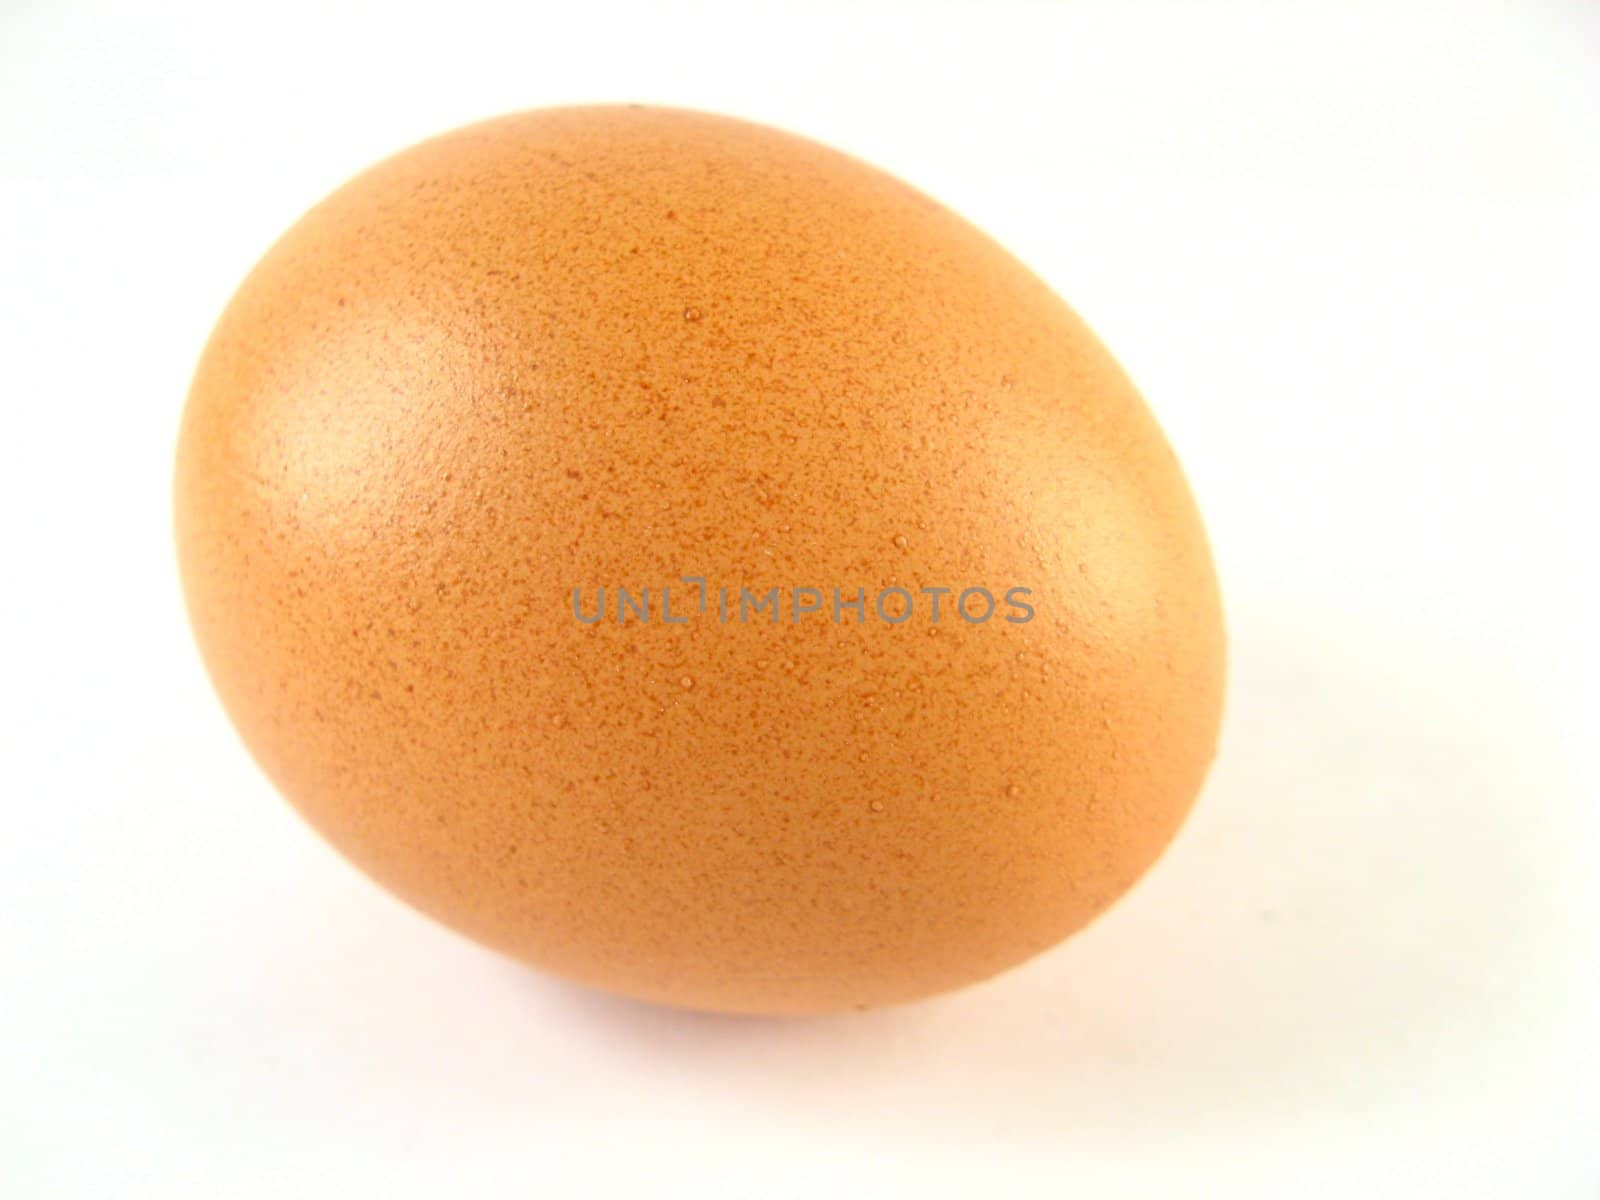 Egg by jbouzou